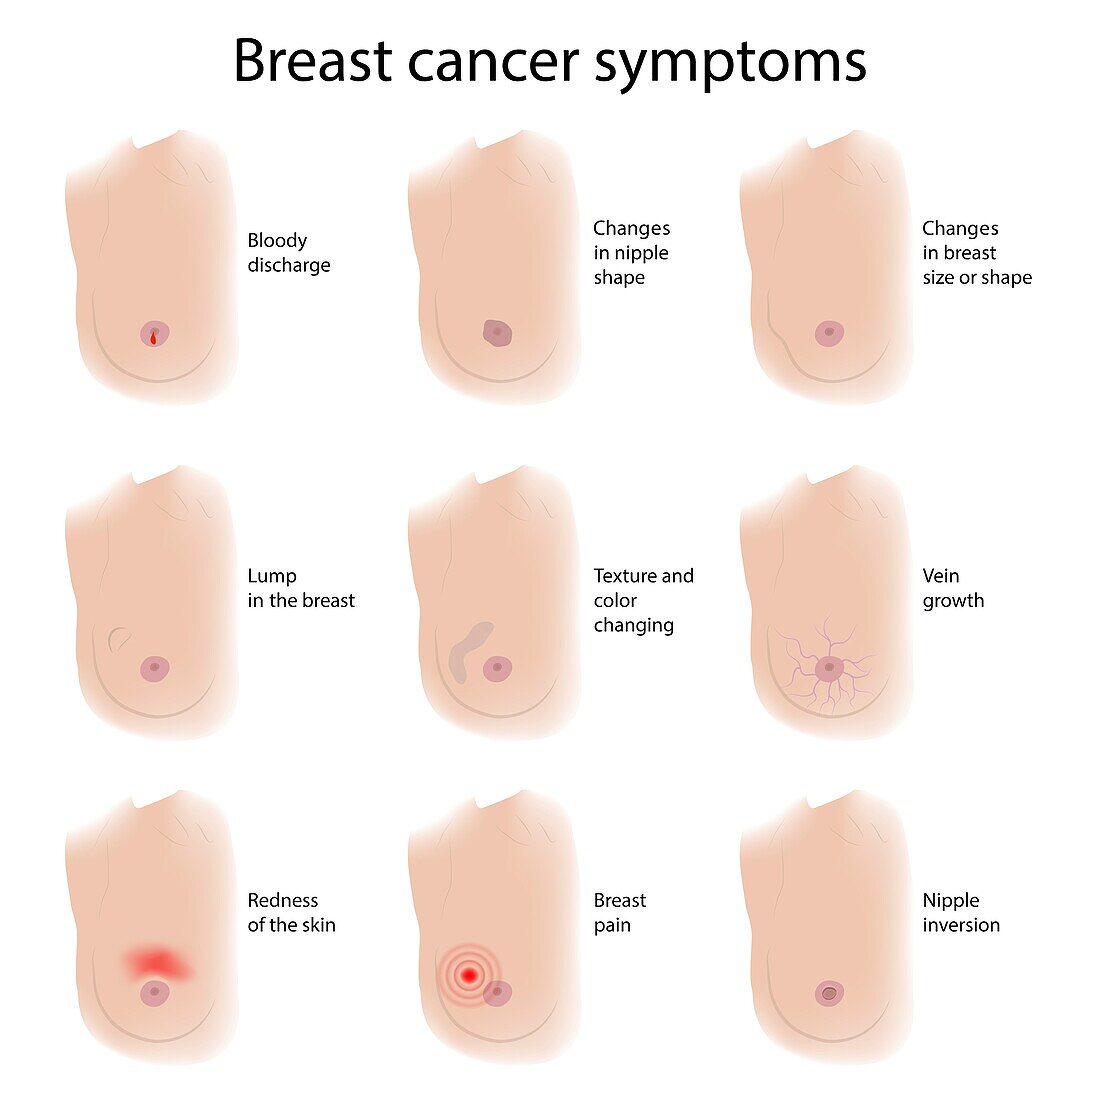 Breast cancer symptoms, illustration